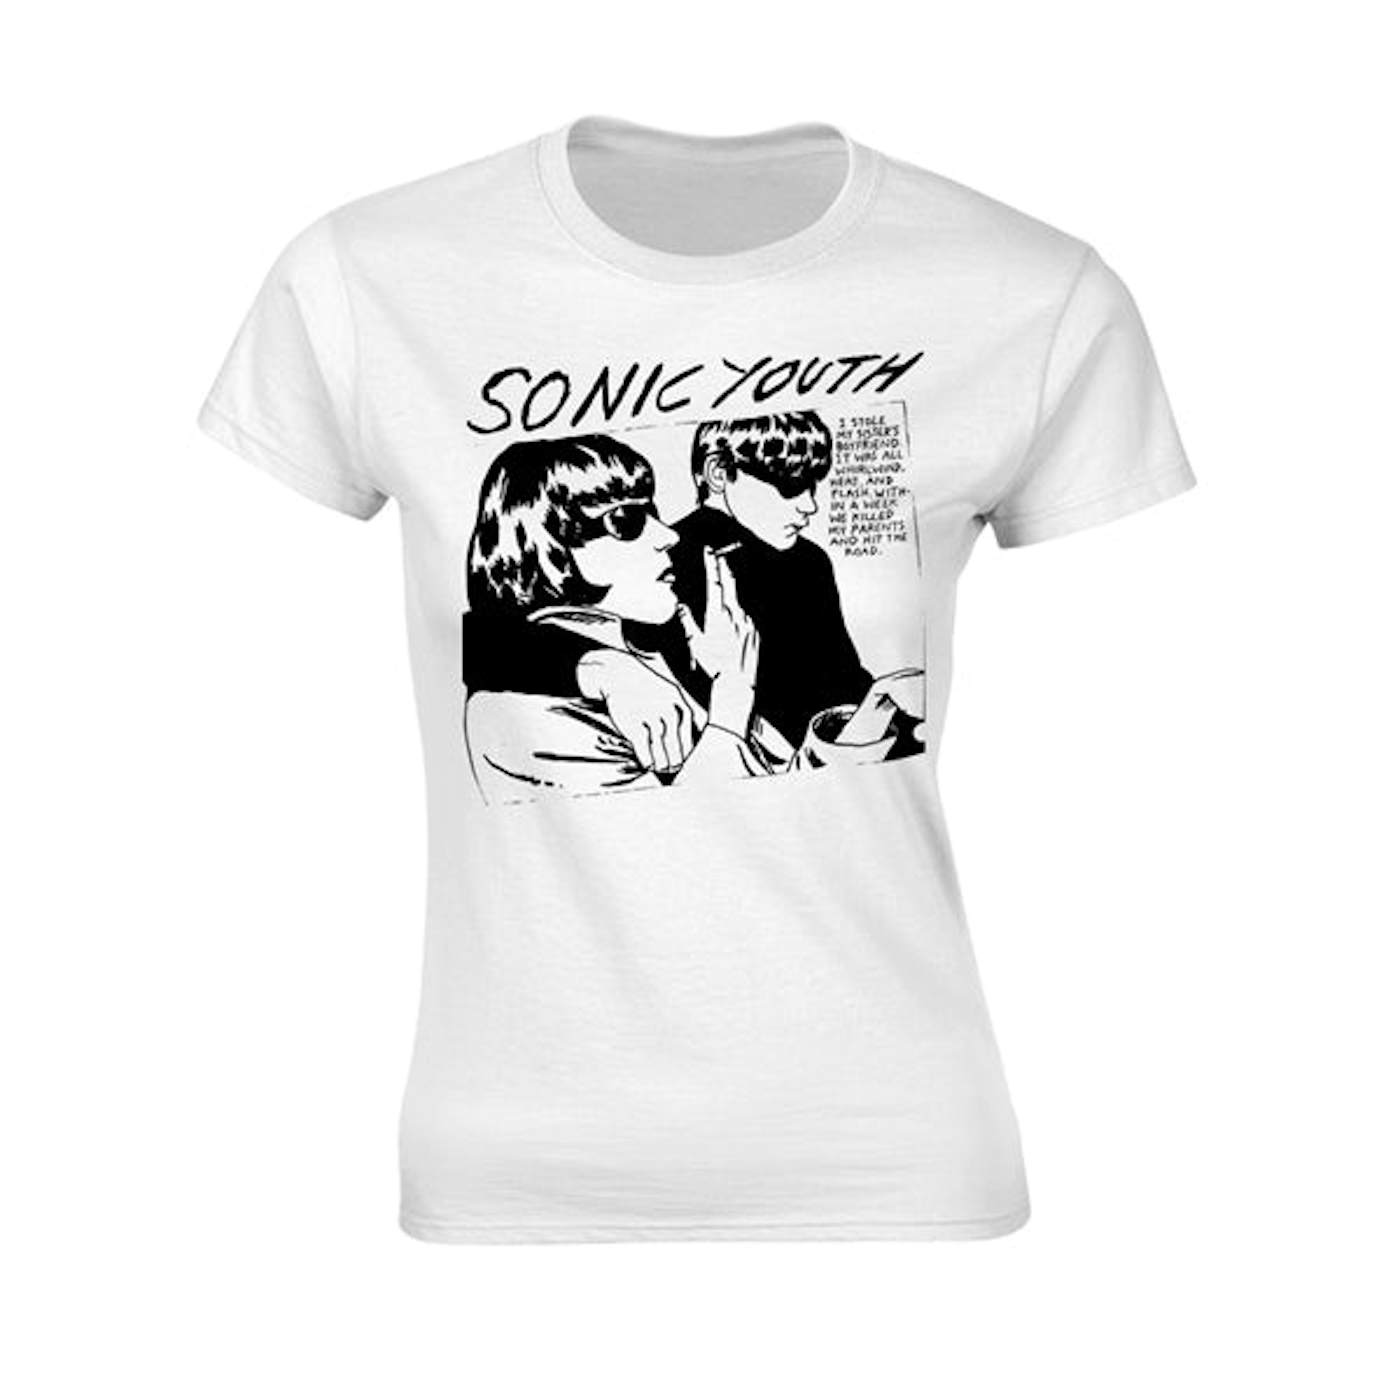 Sonic Youth Women's T Shirt - Goo Album Cover White